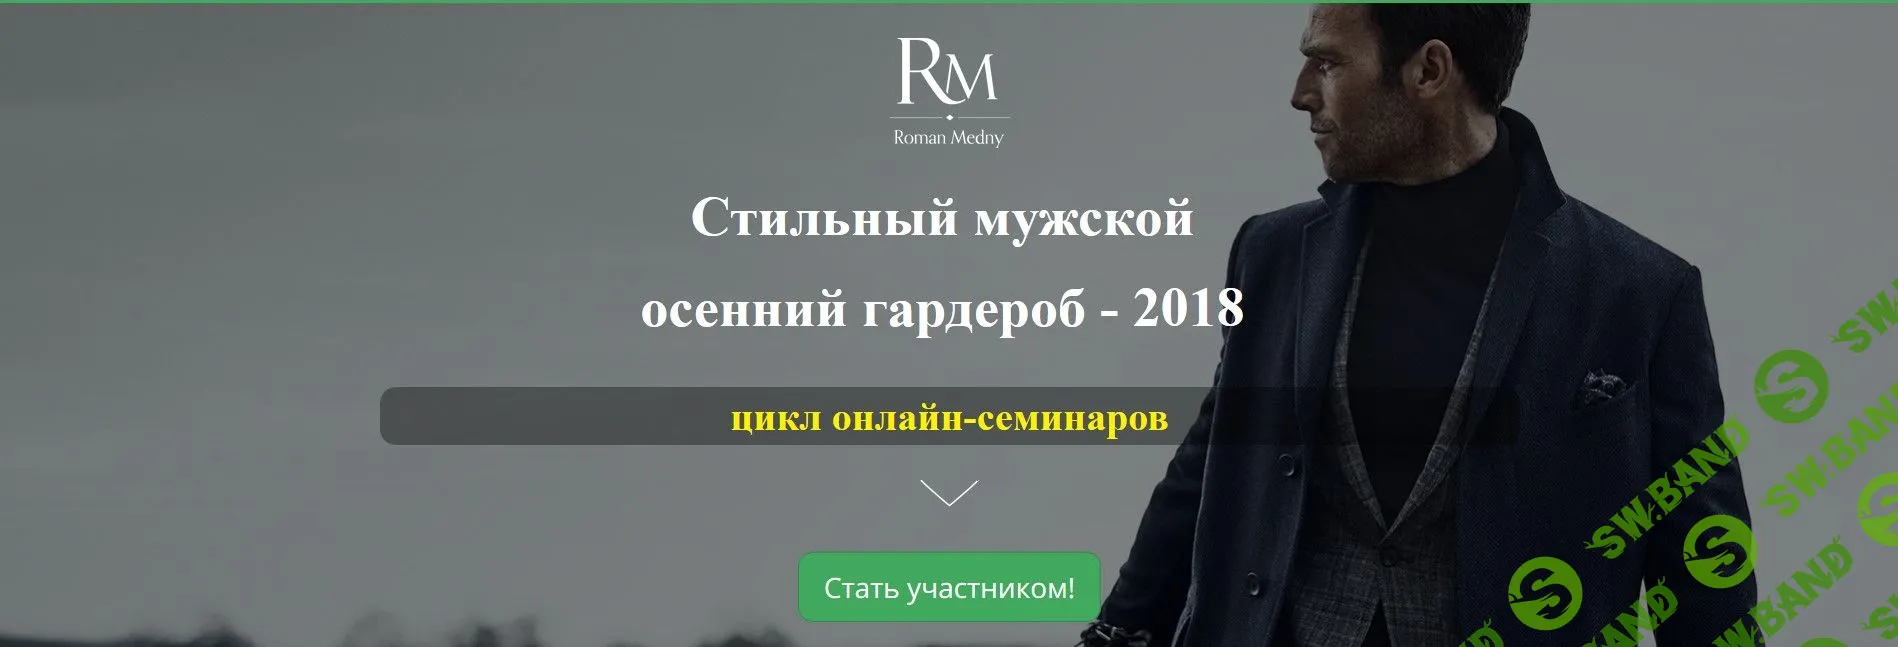 [Роман Медный] Стильный мужской осенний гардероб - 2018